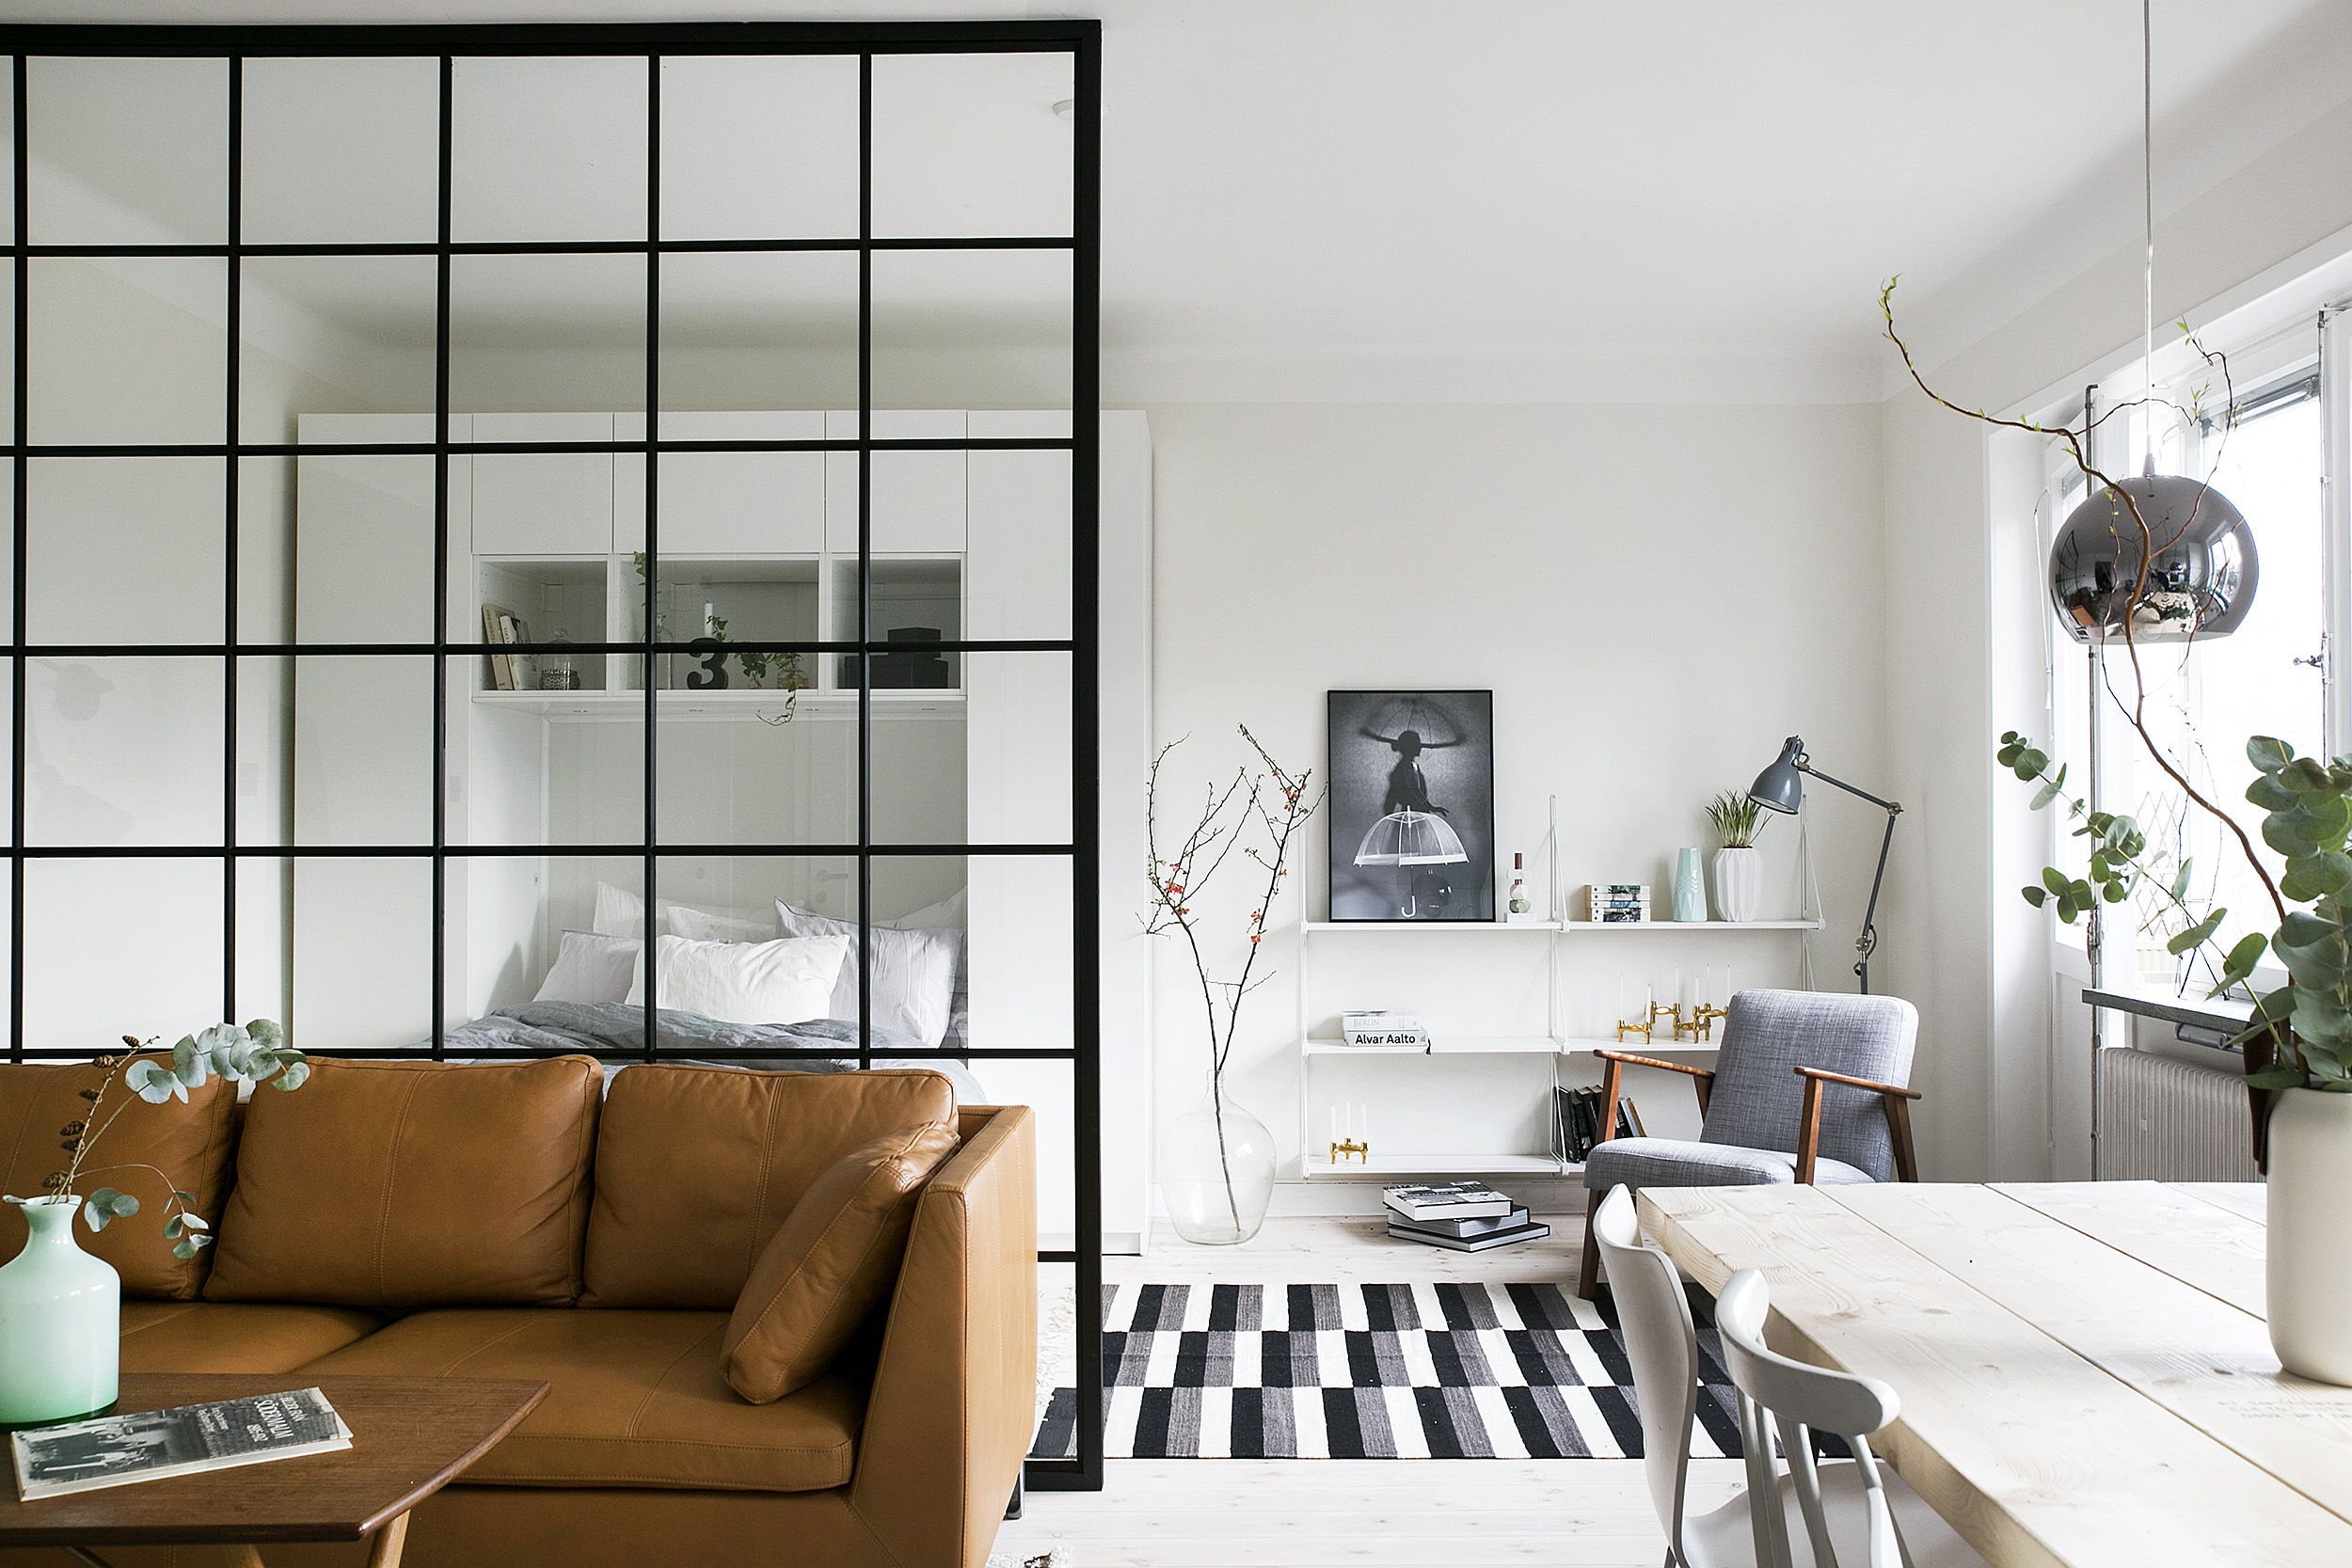 How to Decorate a Studio Apartment - 33 Studio Apartment Ideas